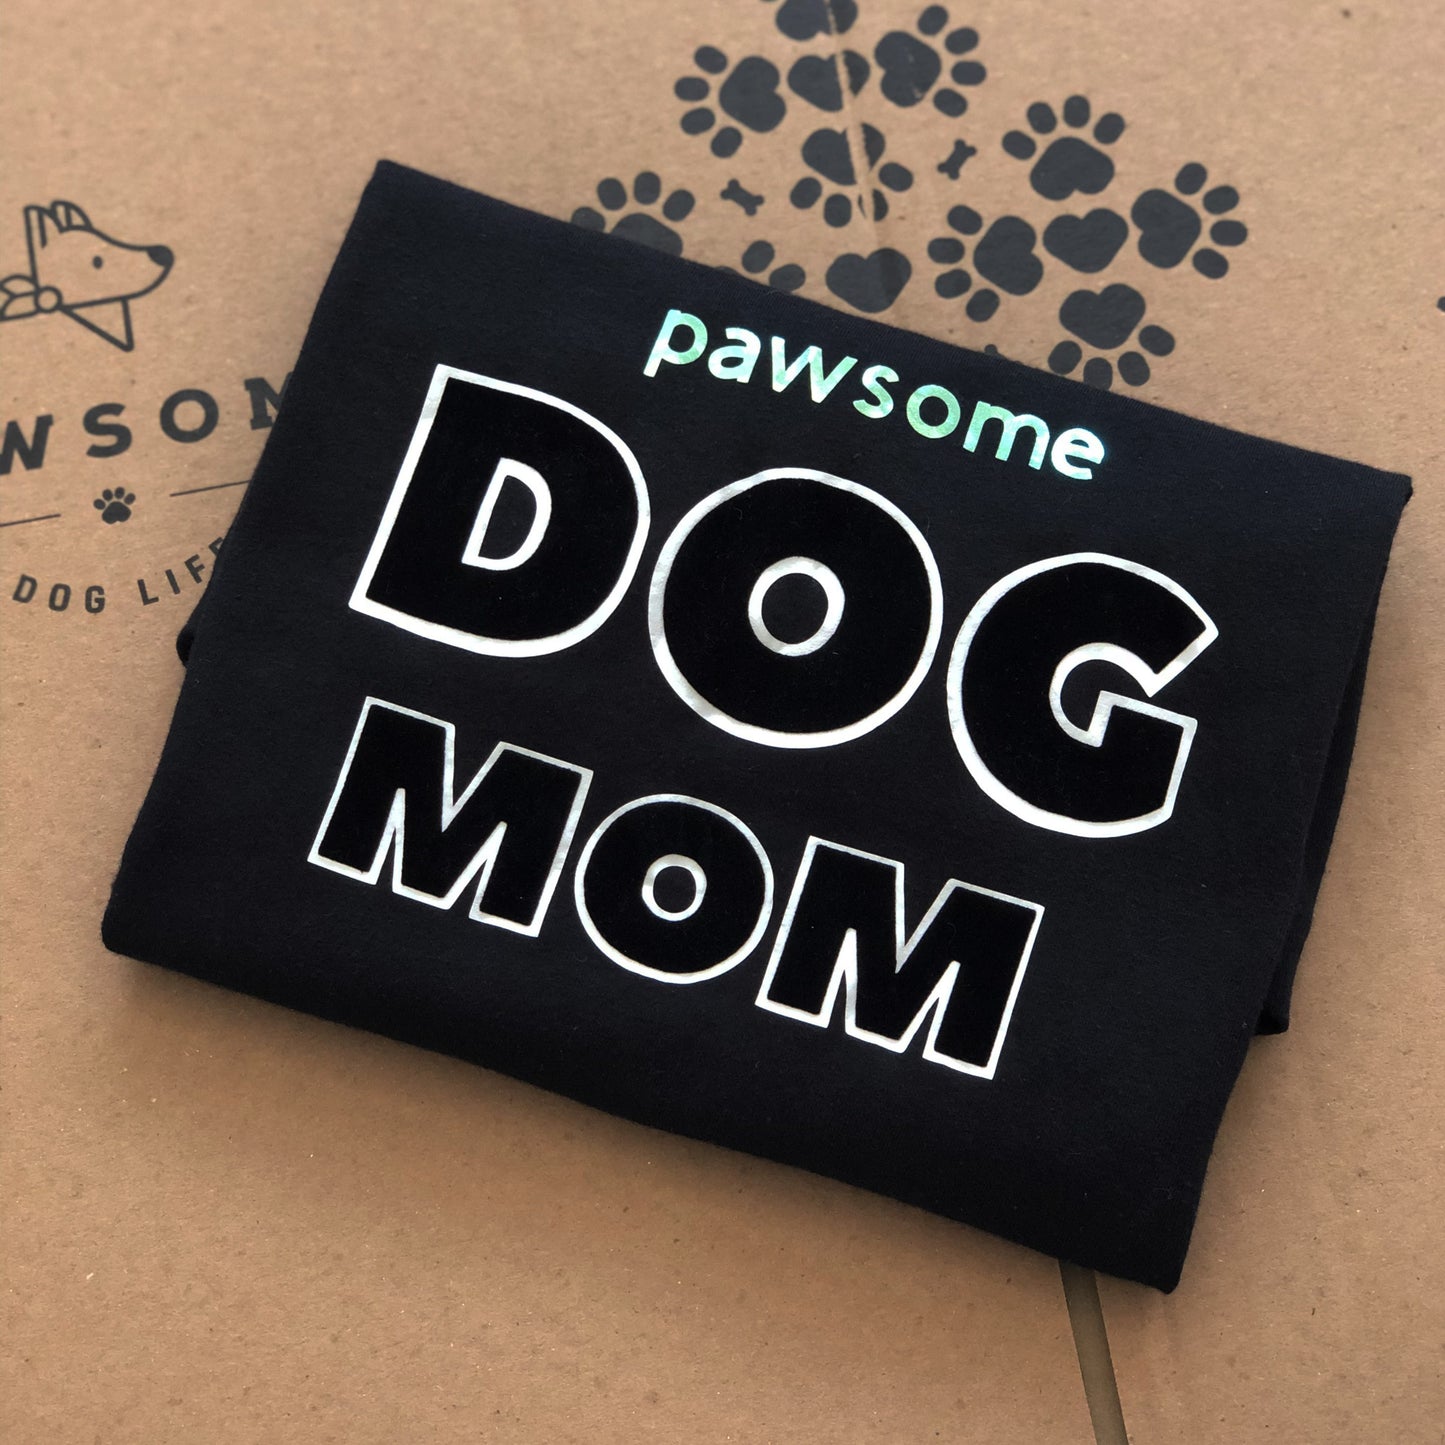 Pawsome Dog Mom Flock T-Shirt